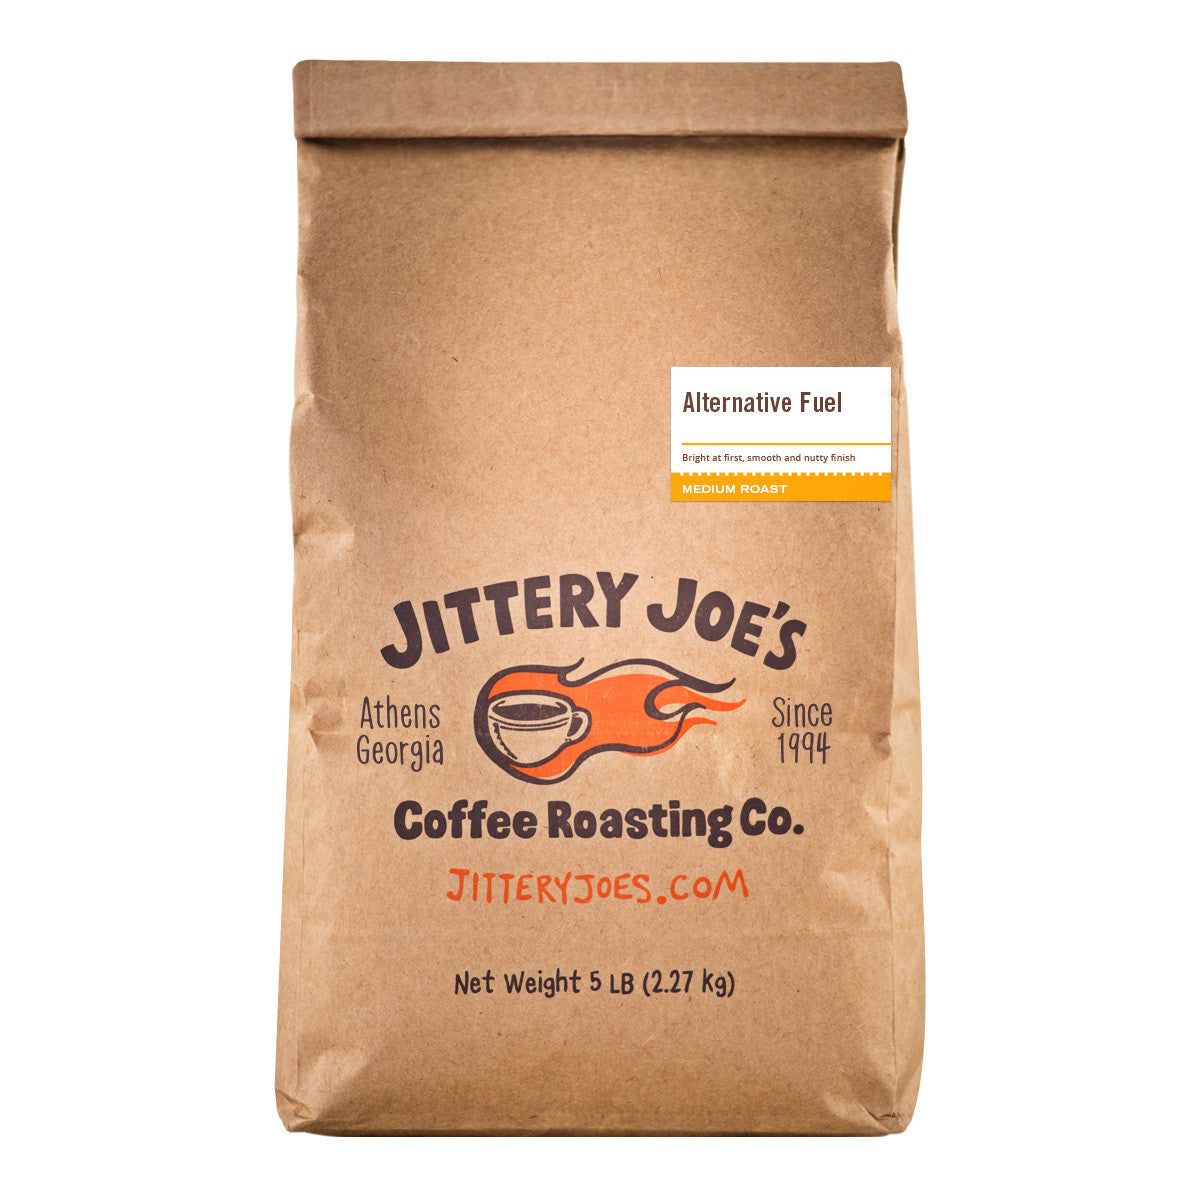 Alternative Fuel - Jittery Joe's Coffee